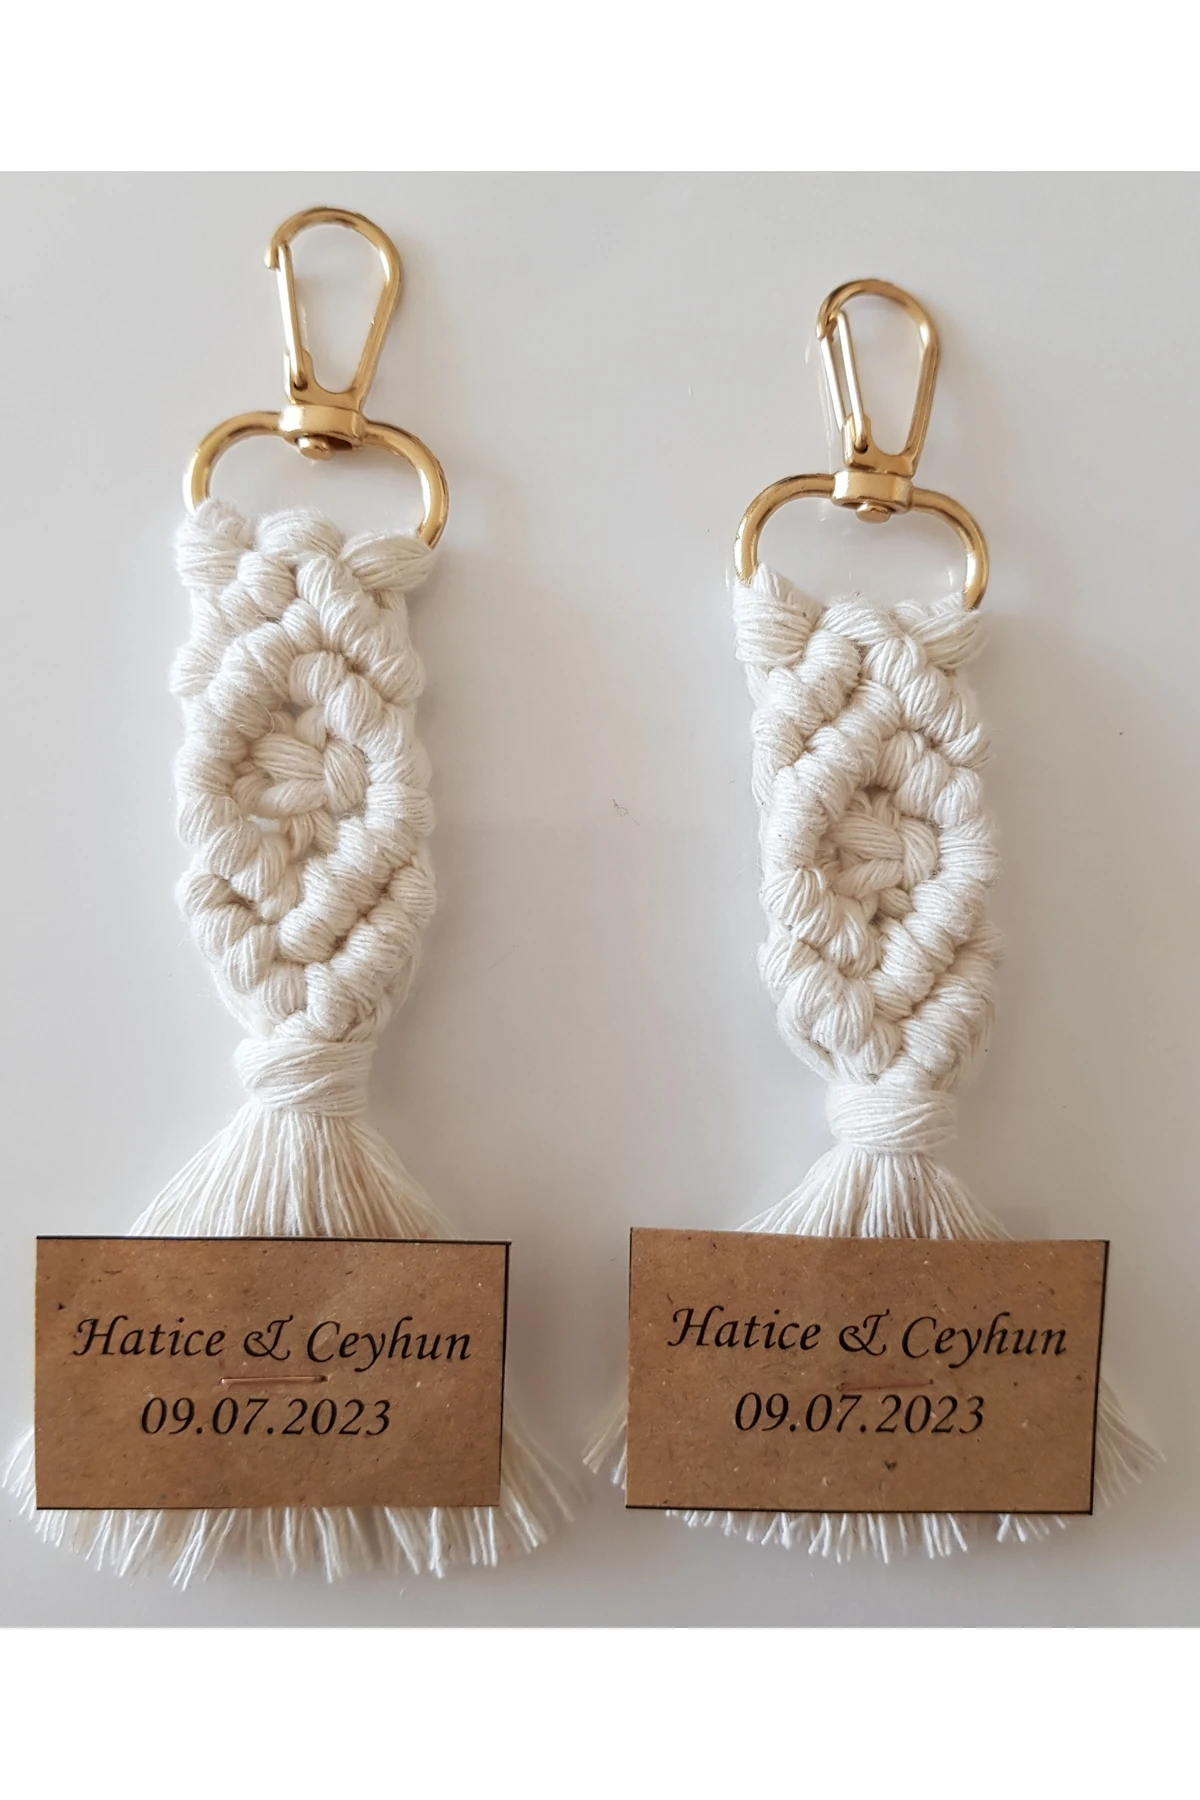 

Tassel Handmade Gift Macrame 40 Pieces Keychain Wedding Engagement Henna Sunet Concept Gift Holder